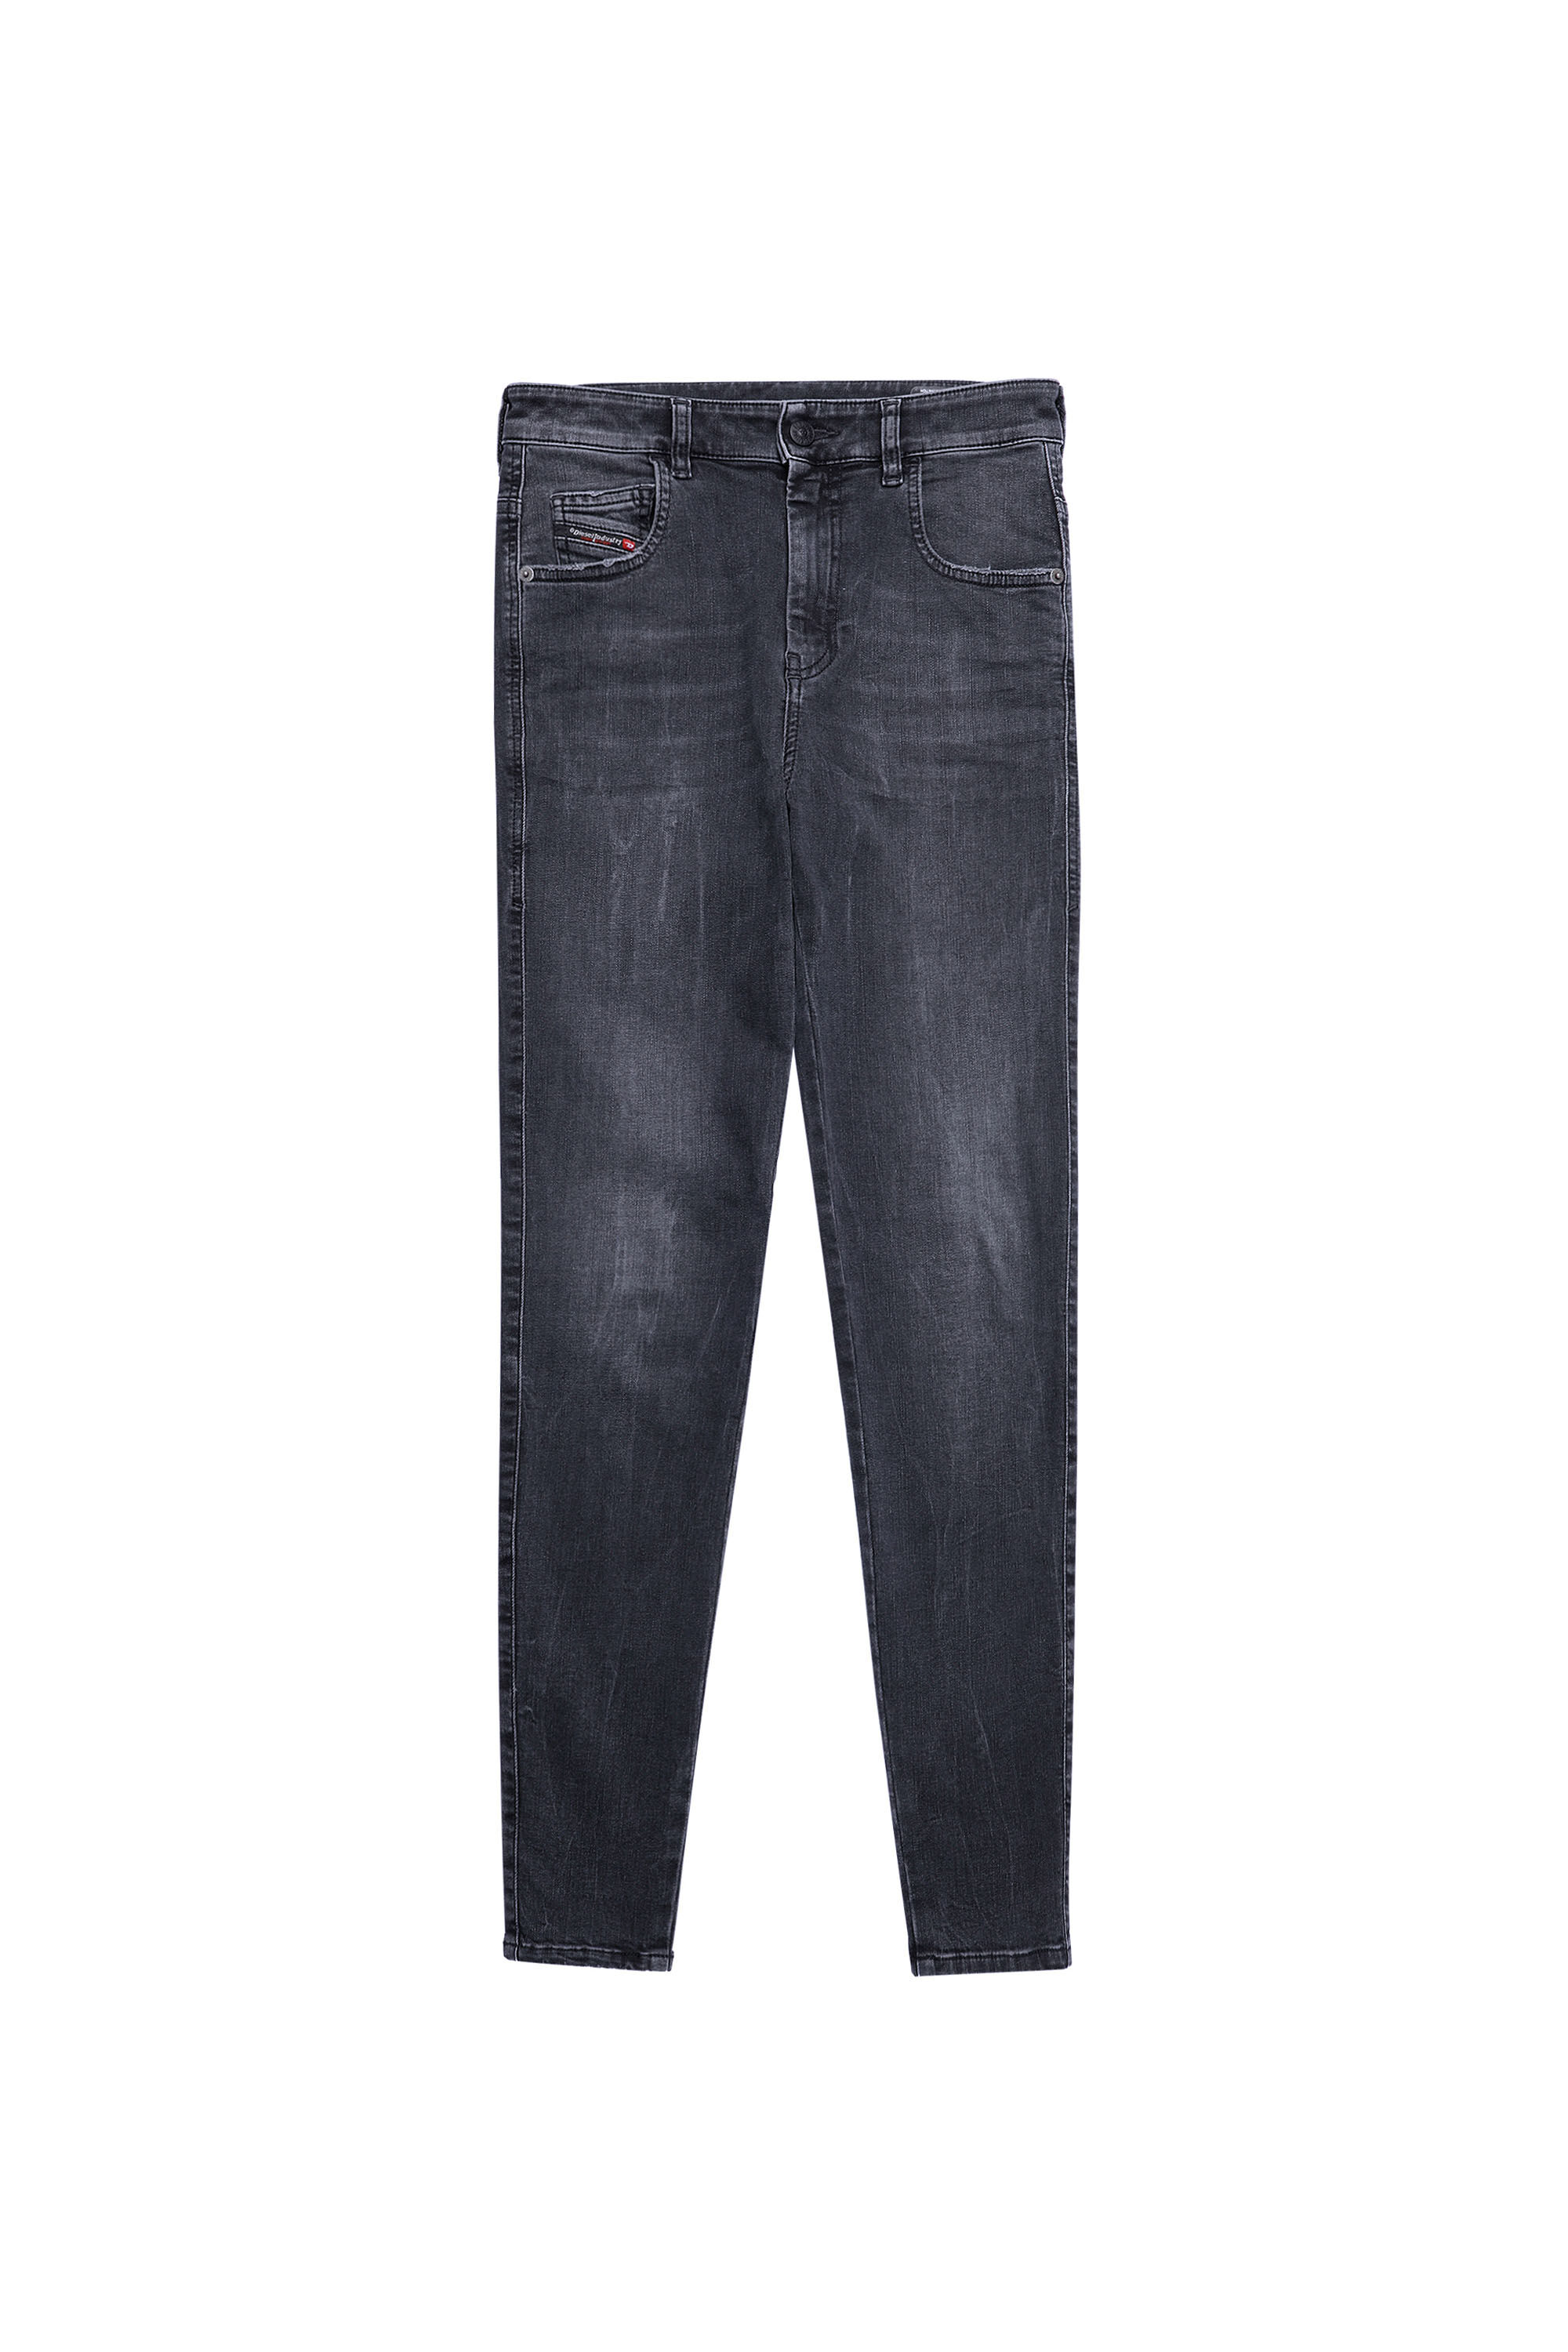 Diesel - Slandy High Skinny Jeans 069XP, Black/Dark grey - Image 2